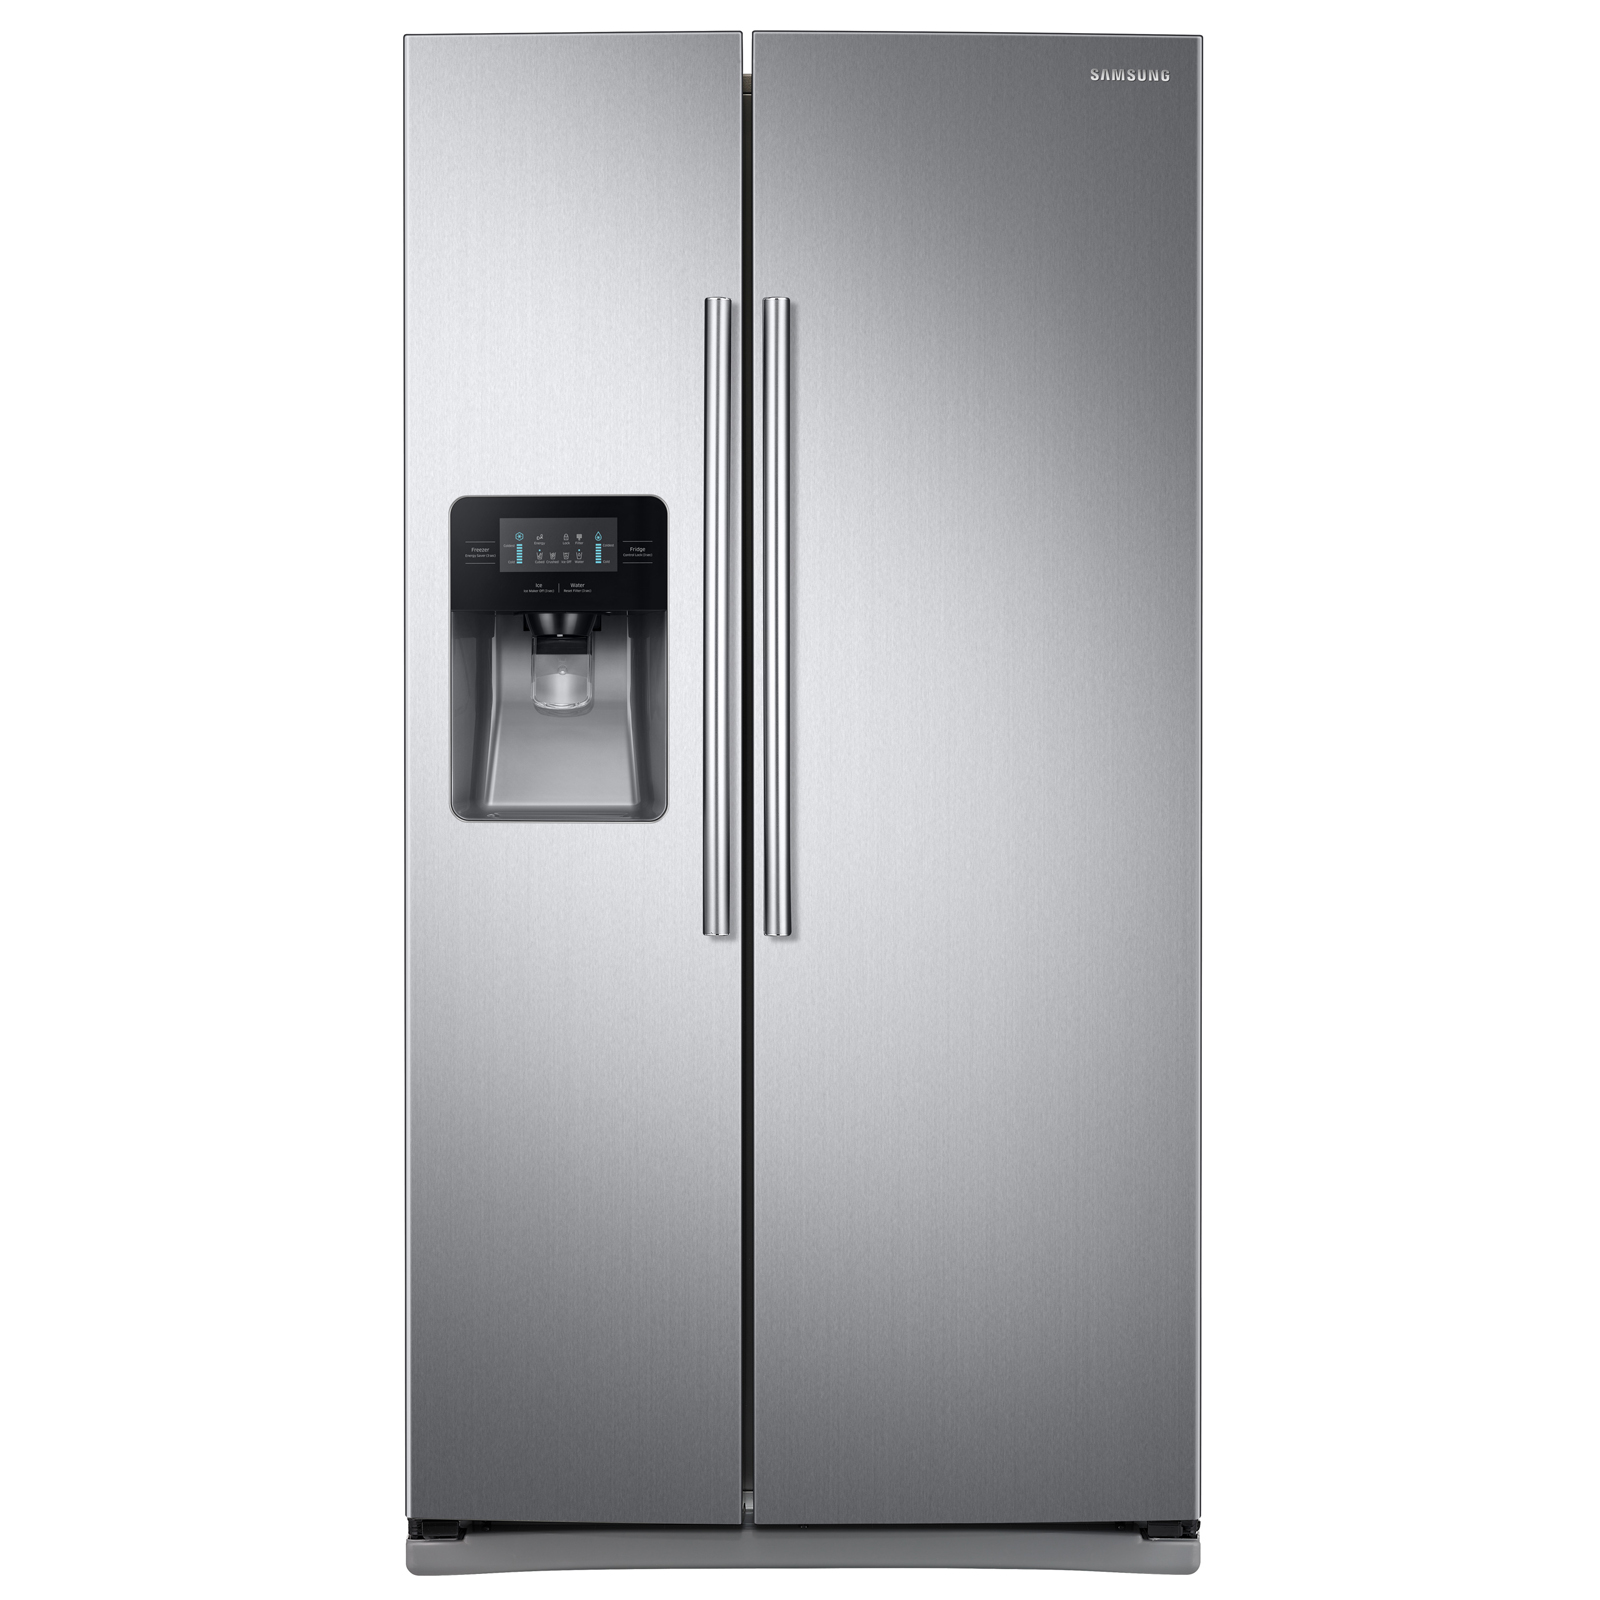 Samsung RS25J500DSR 25 cu. ft. Side-by-Side Refrigerator - Stainless Samsung Side By Side Stainless Steel Refrigerator